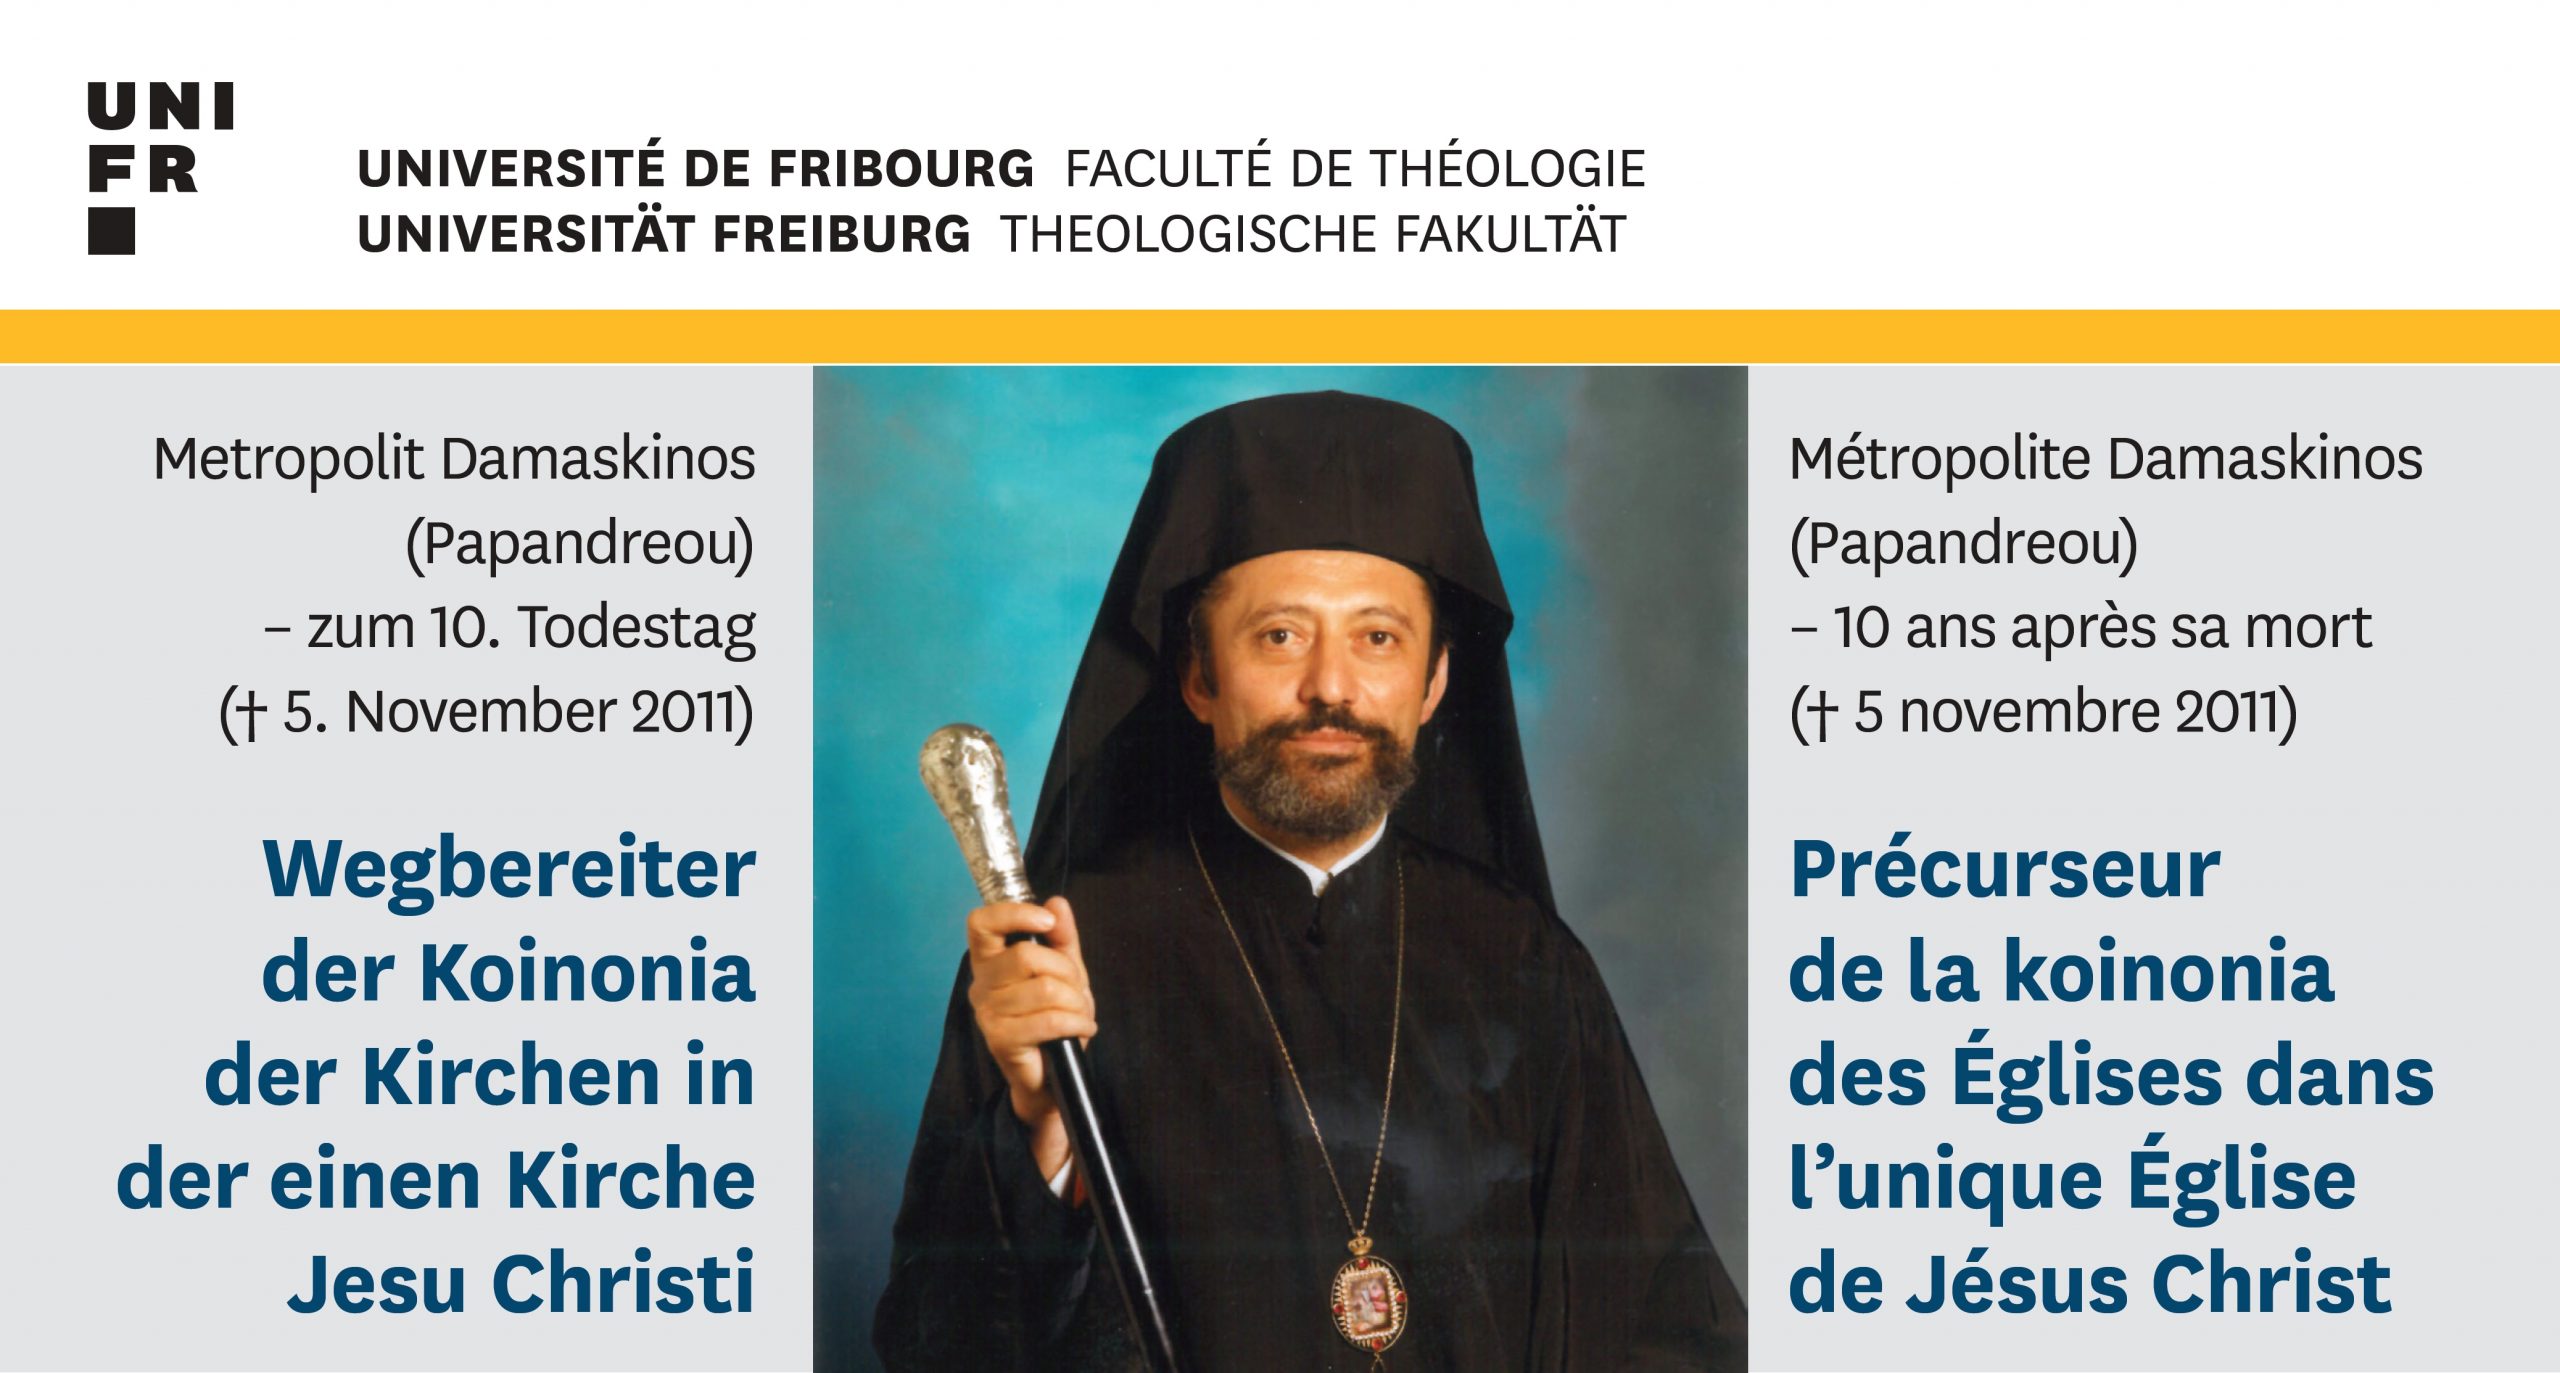 Séance académique à l’honneur du métropolite Damaskinos de l’Institut d’études oecuménique (Fribourg)